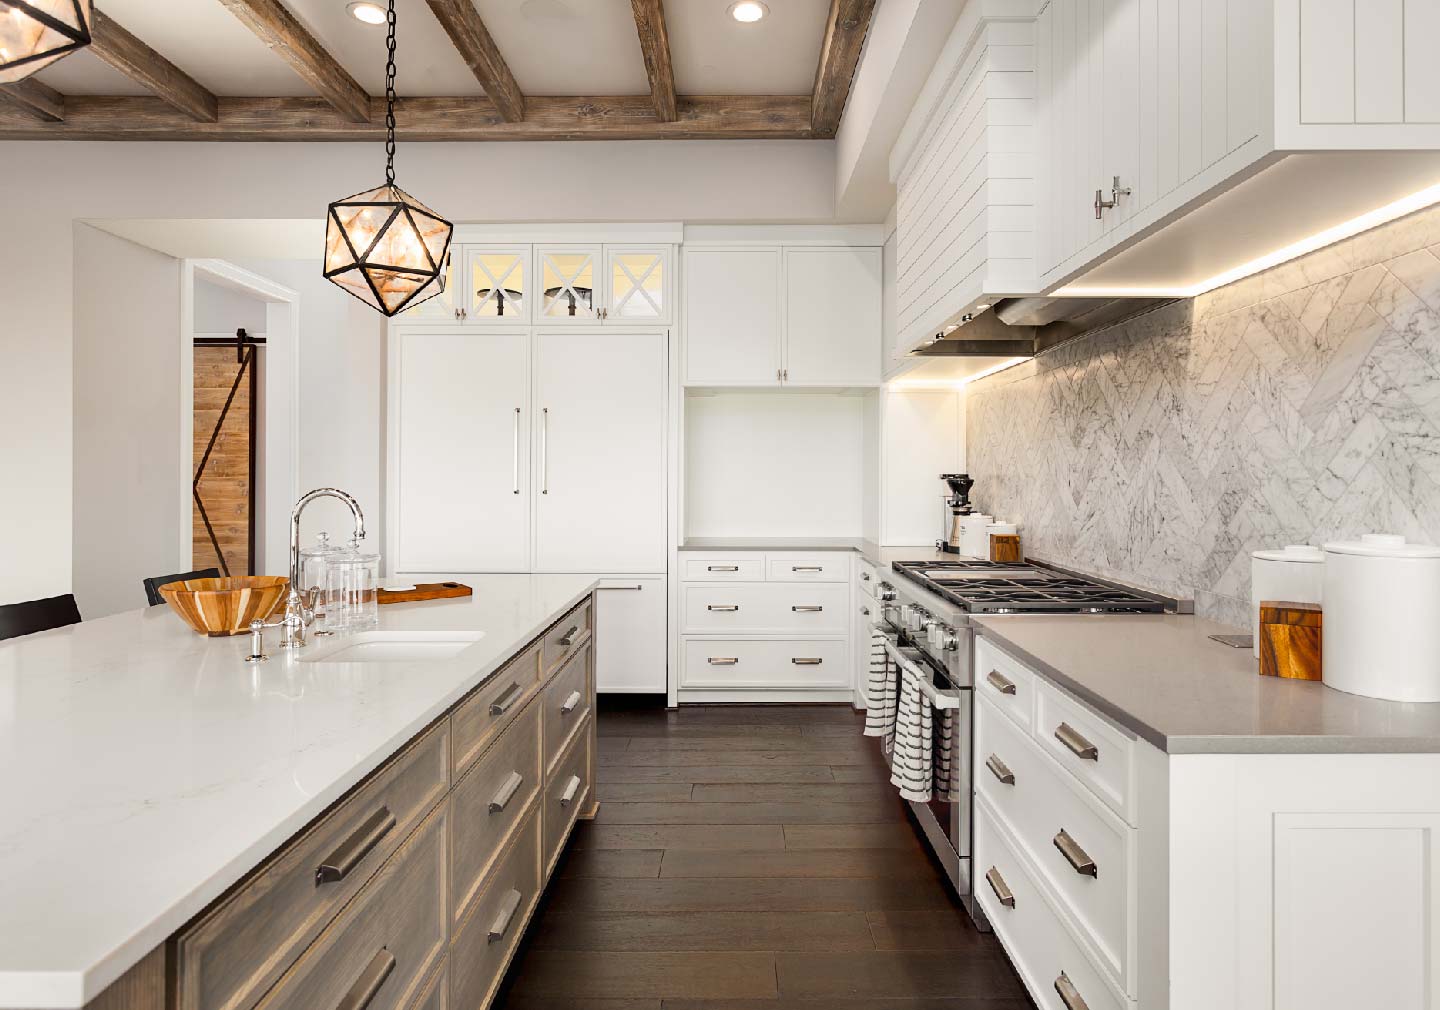 white background kitchen interior designs